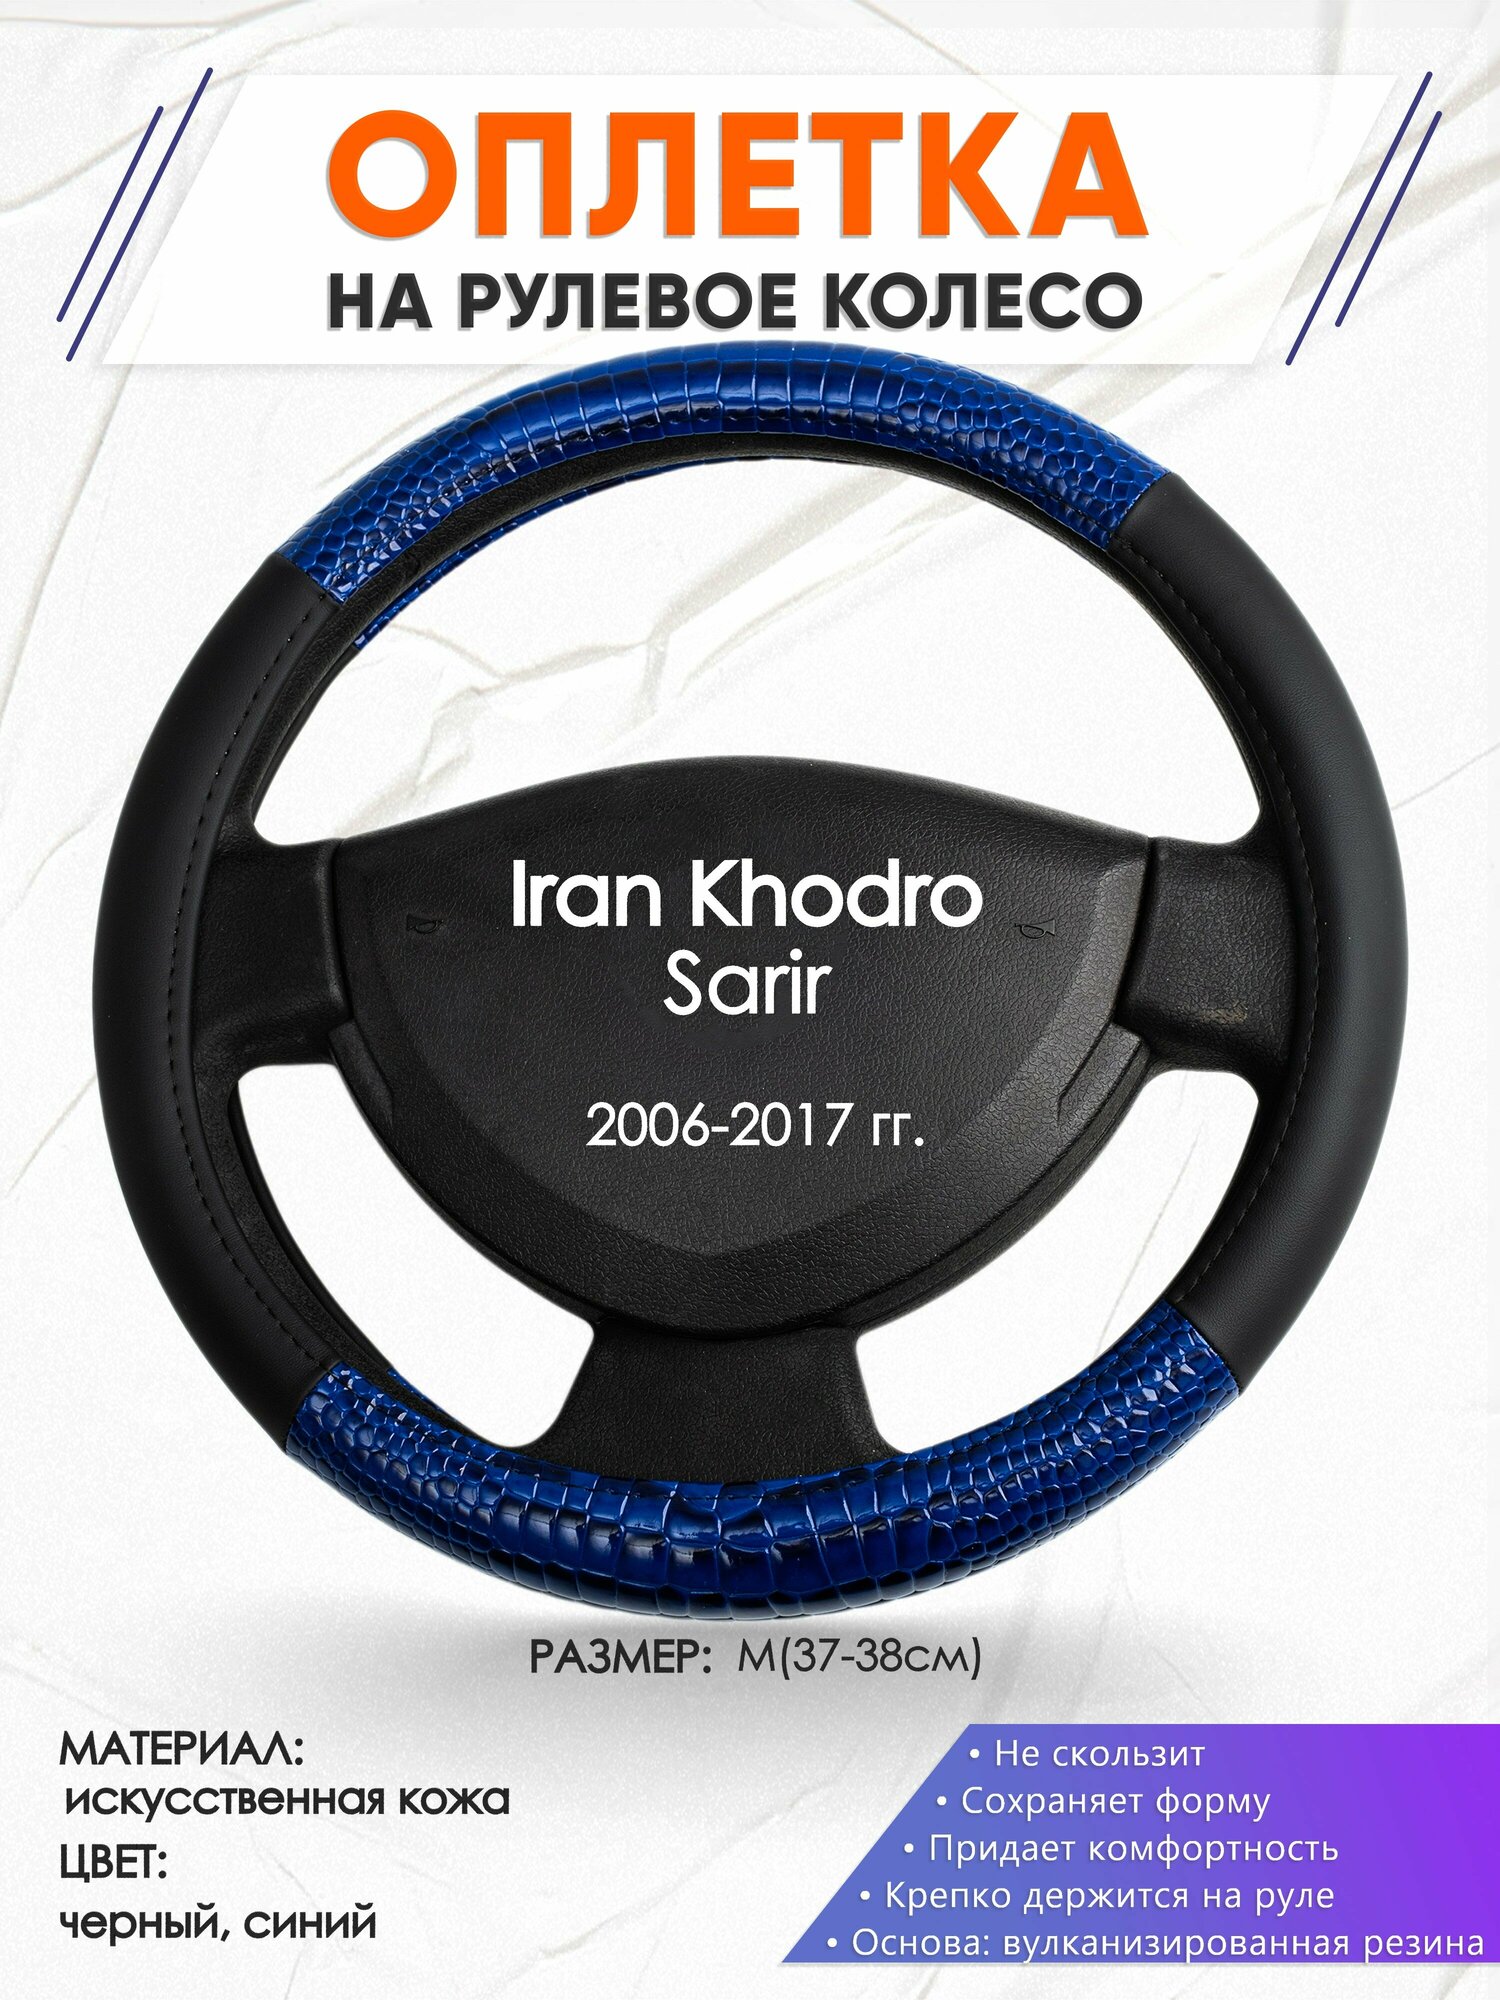 Оплетка наруль для Iran Khodro Sarir(Иран Ходро Сарир) 2006-2017 годов выпуска, размер M(37-38см), Искусственная кожа 82